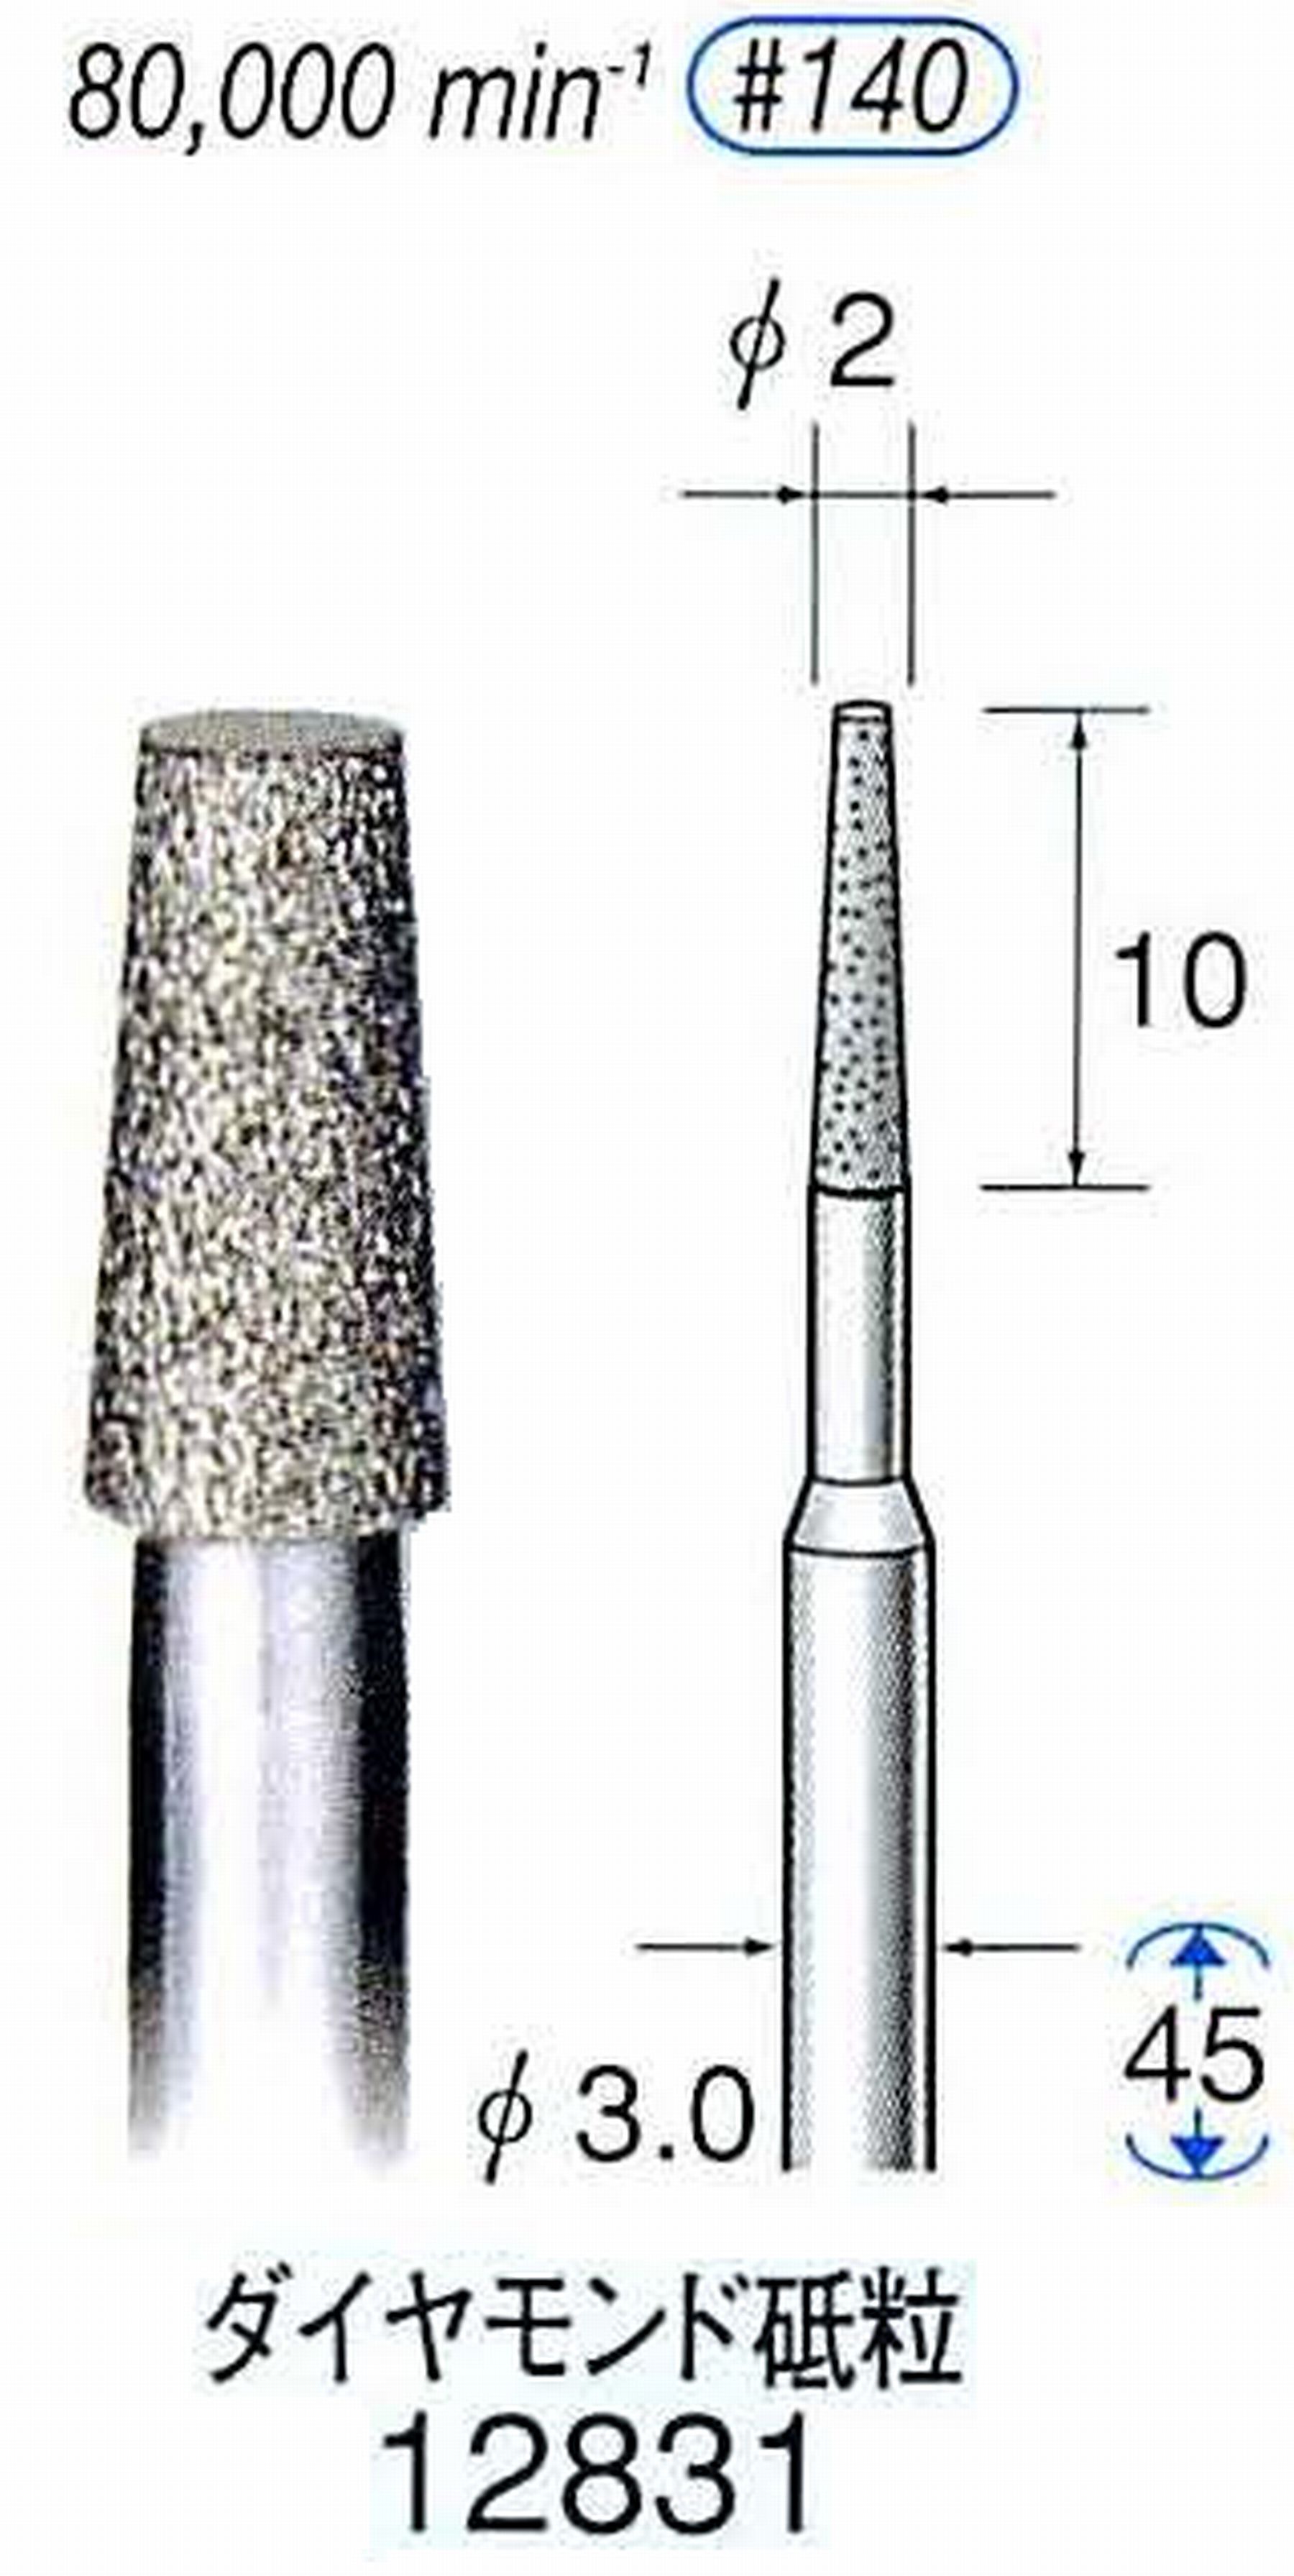 ナカニシ/NAKANISHI クラフト・ホビー用ダイヤモンドバー ダイヤモンド砥粒 軸径(シャンク)φ3.0mm 12831